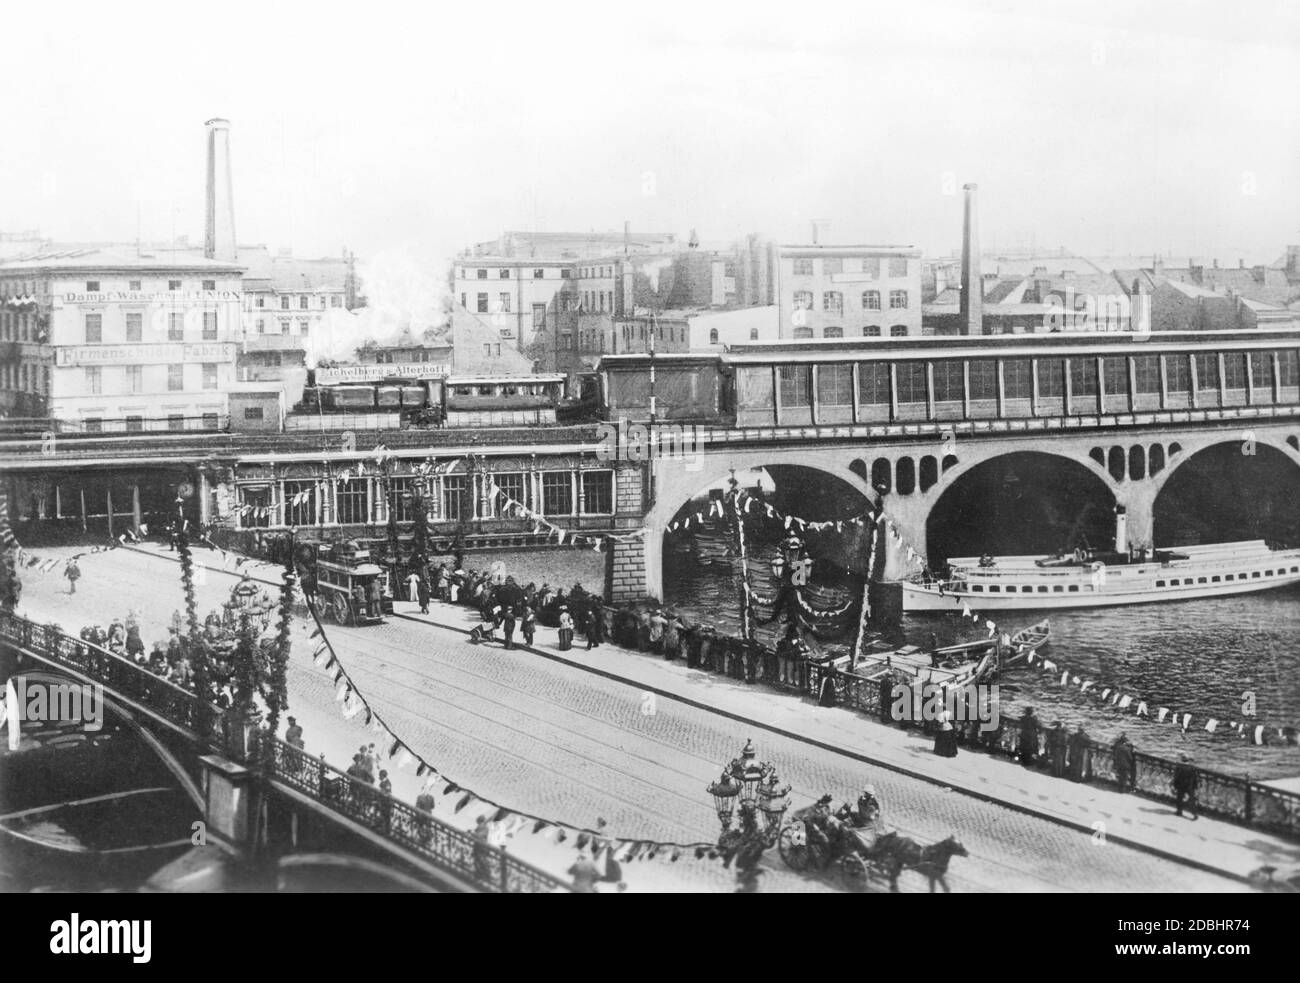 Vista della vecchia stazione Jannowitzbruecke durante l'apertura della Stadtbahn (ferrovia leggera) a Berlino. Questo si proveniva dall'est di Berlino all'estremo ovest fino a Charlottenburg. È stata la prima ferrovia viaduct europea in tutta la città." Foto Stock